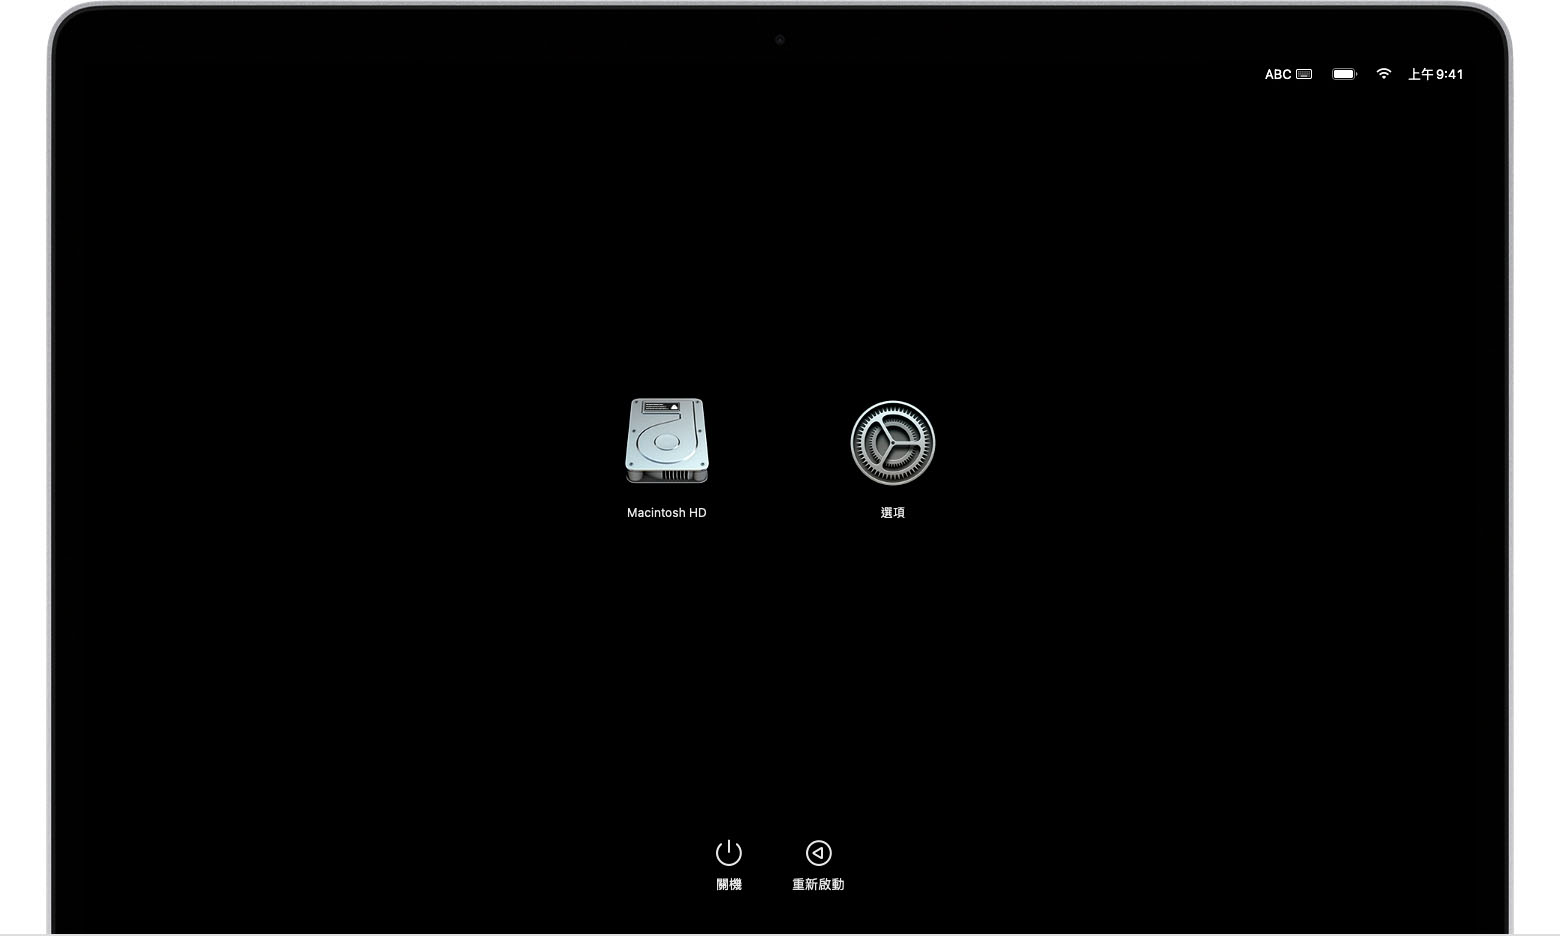 顯示 Macintosh HD 和「選項」圖像的 macOS 開機選項畫面